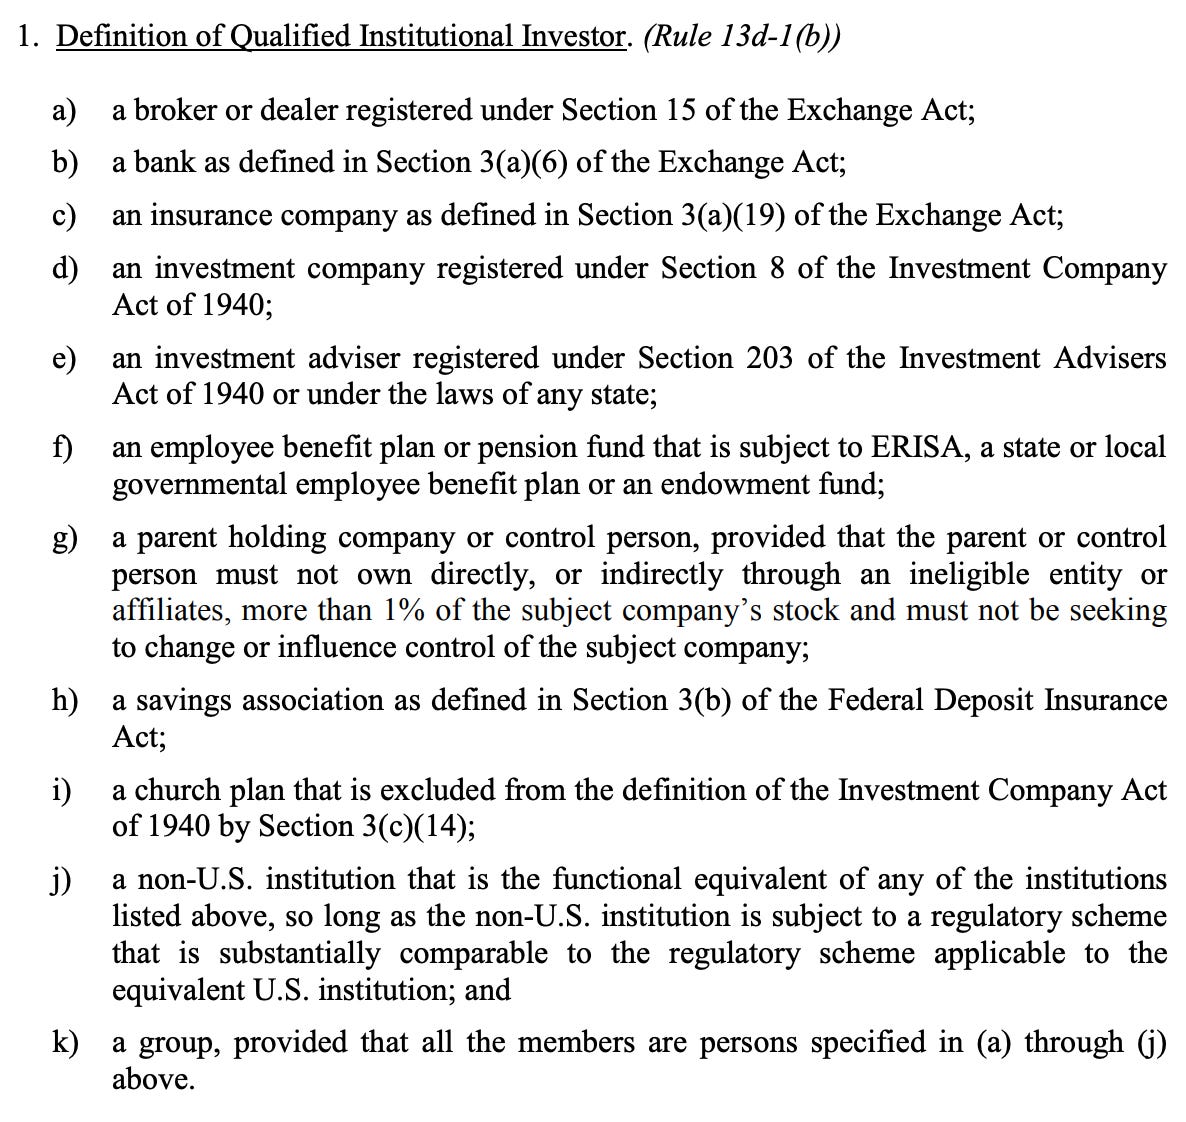 qualified institutional investor QII